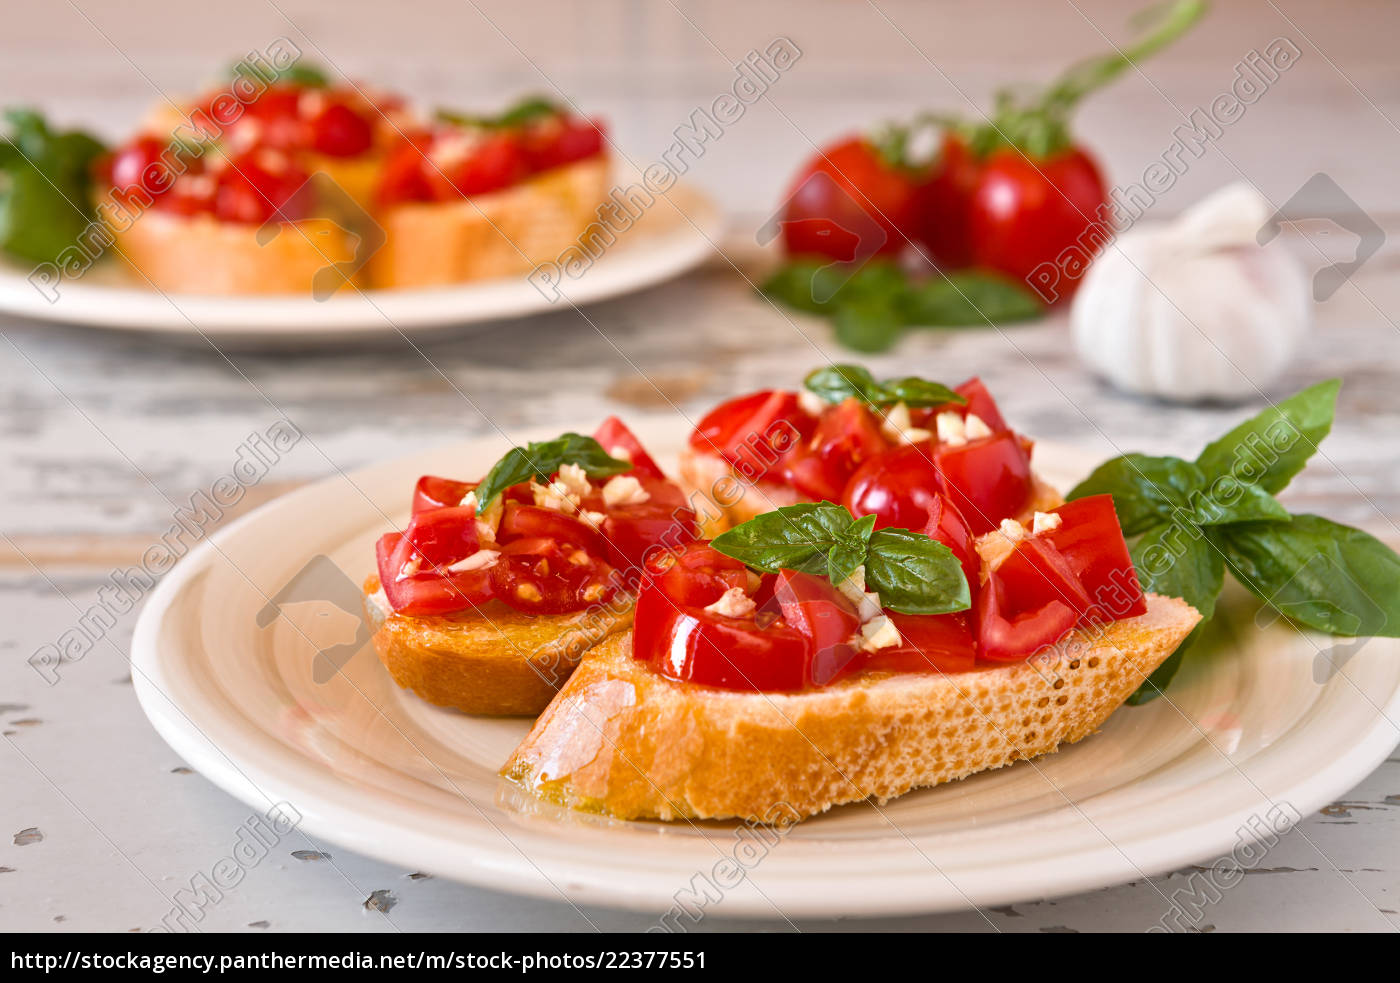 italienische bruschetta mit tomaten basilikum und - Lizenzfreies Bild ...